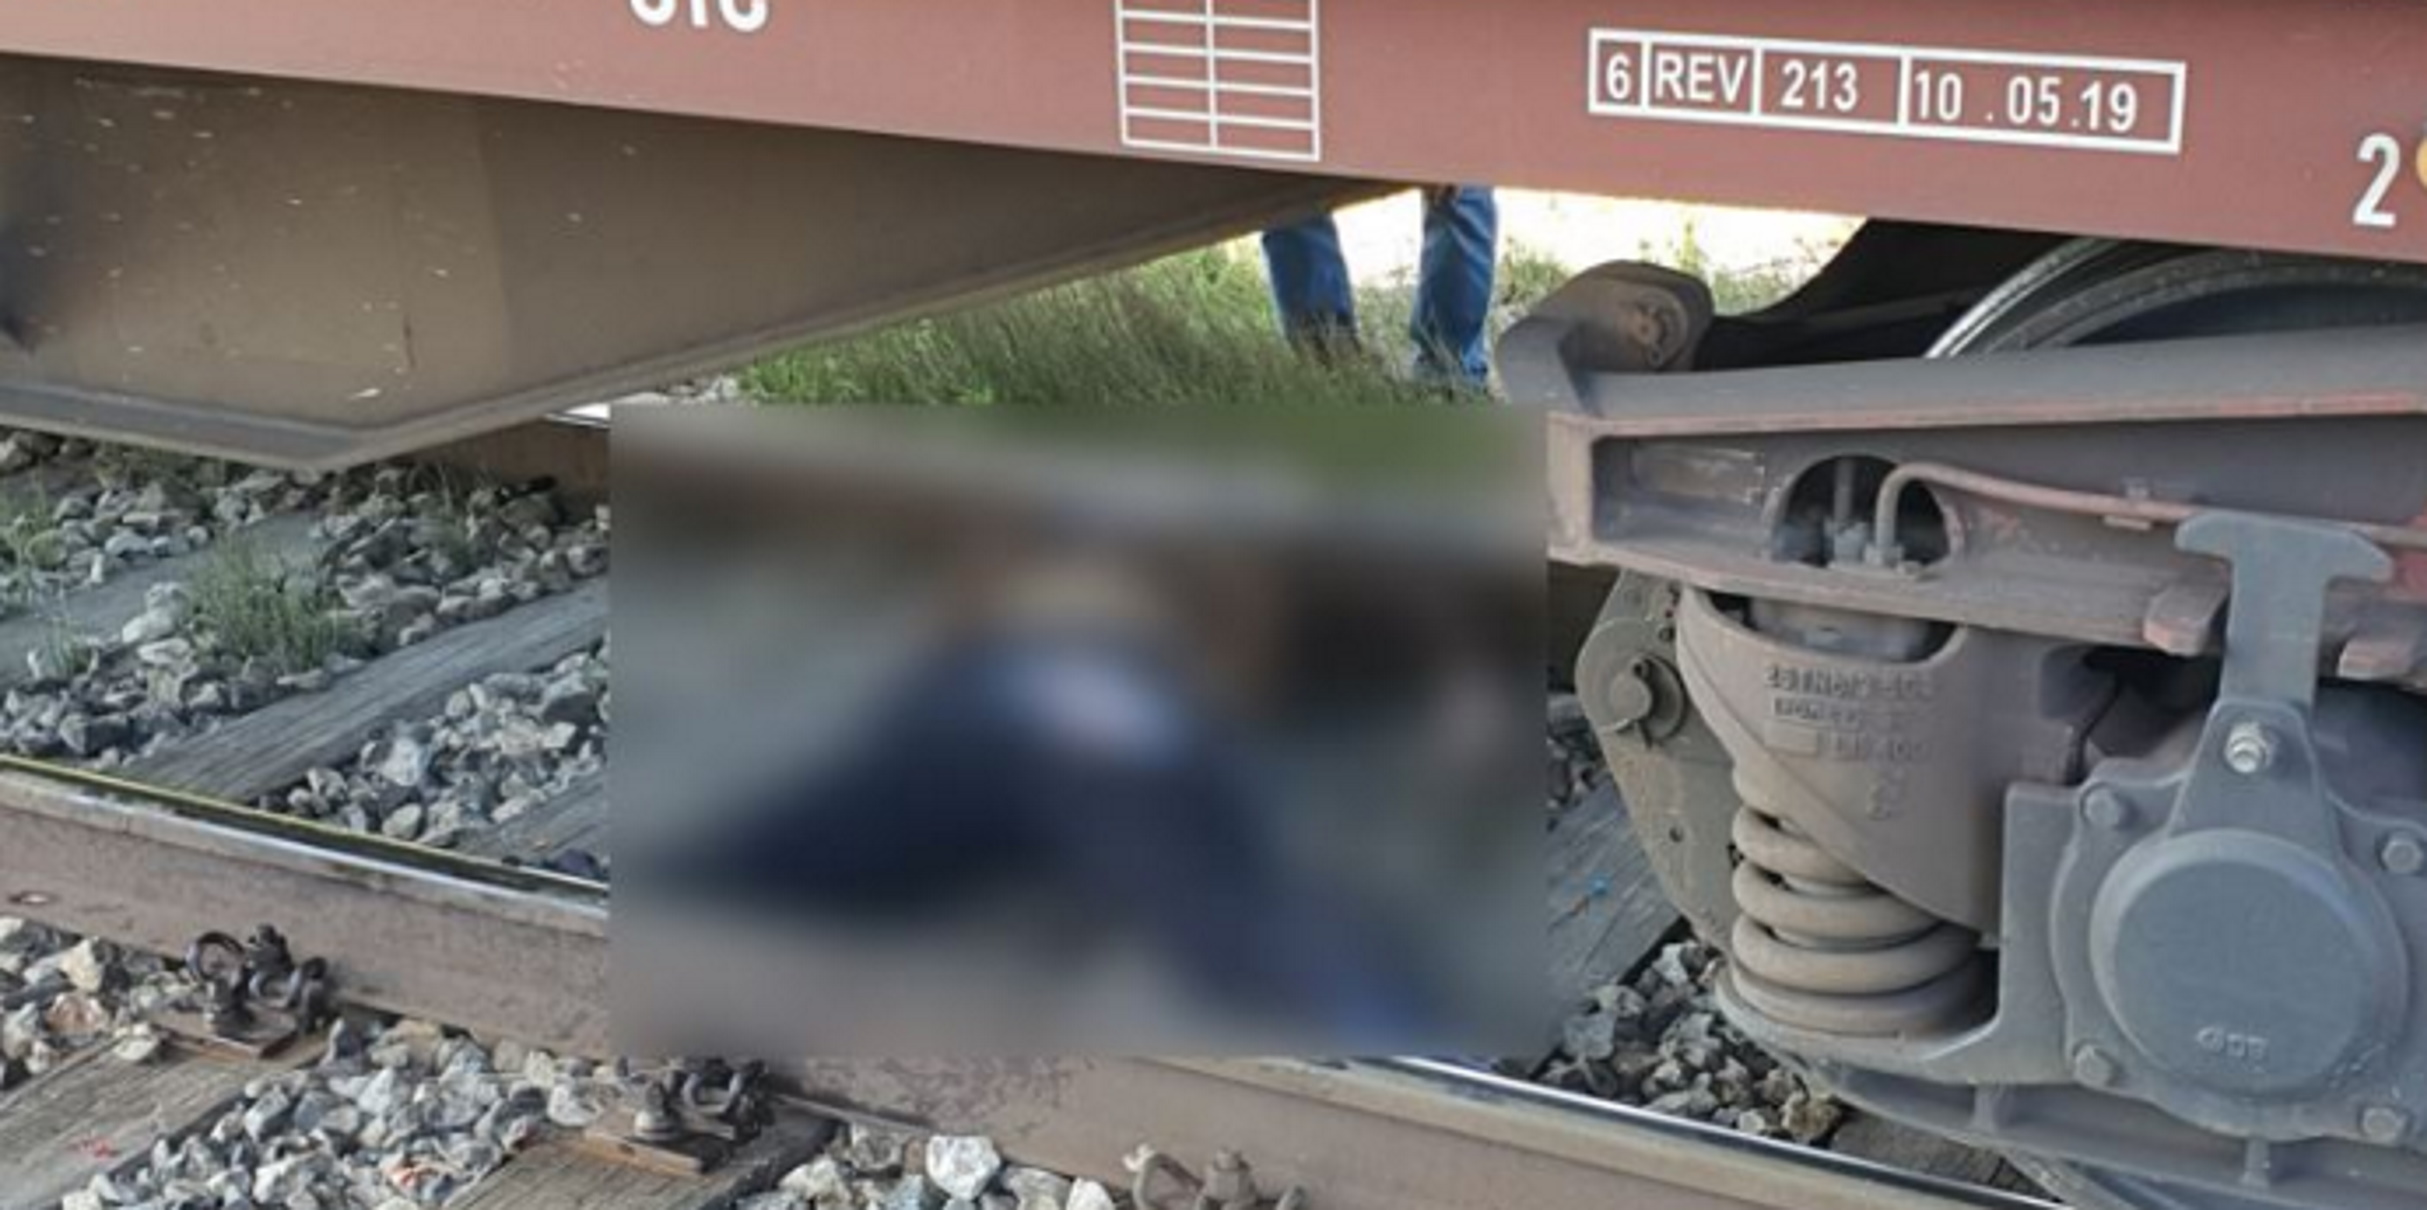 Πλατύ Ημαθίας: Τρένο παρέσυρε και σκότωσε άνδρα – Εικόνες από τις γραμμές της τραγωδίας